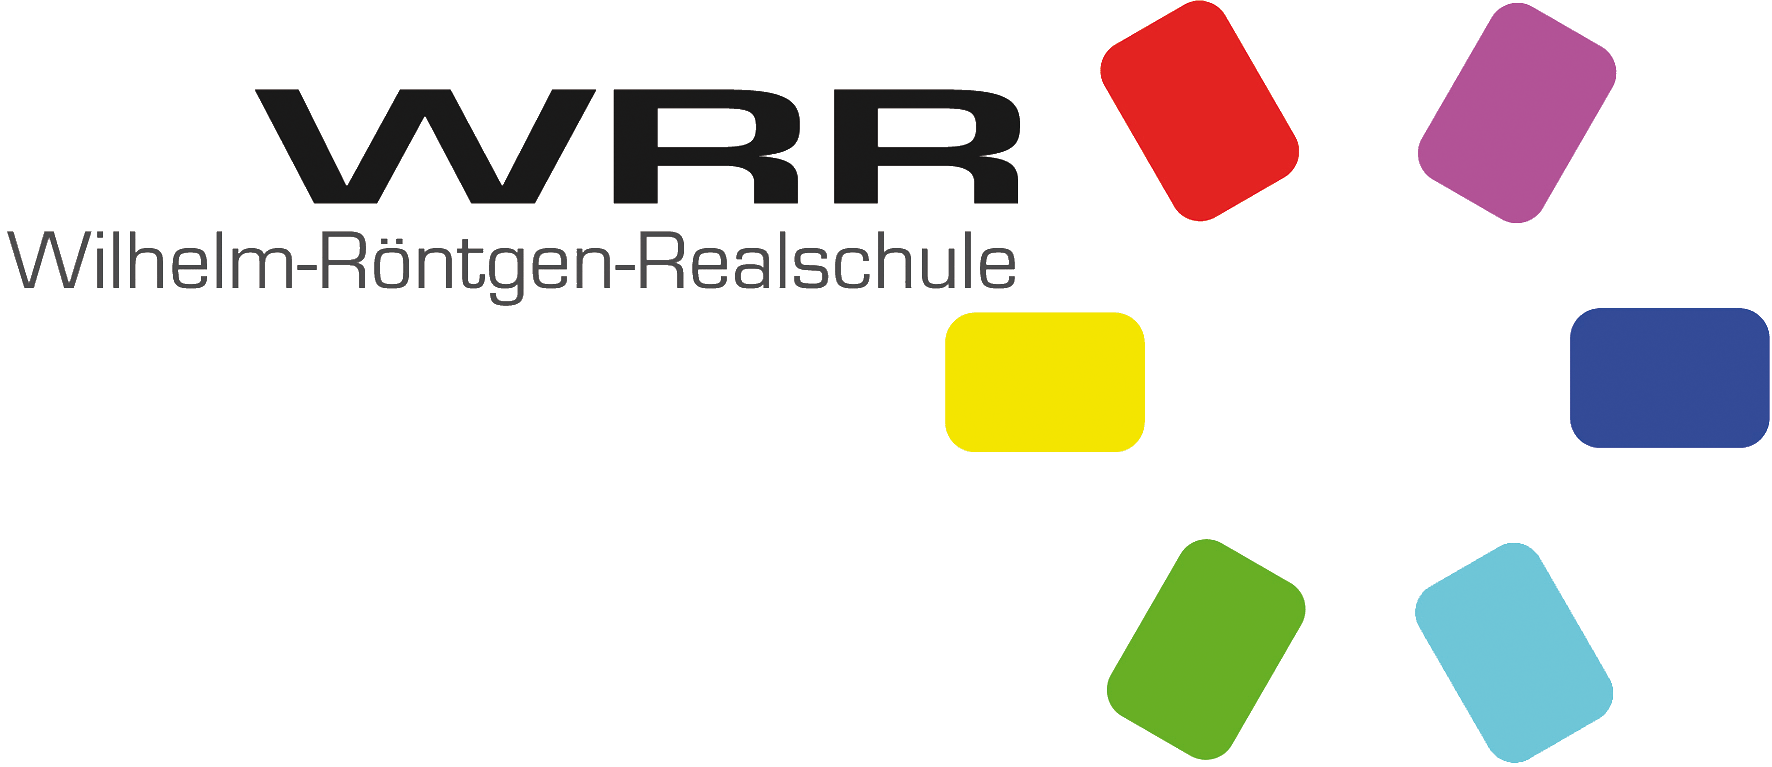 Wilhelm-Roentgen-Realschule